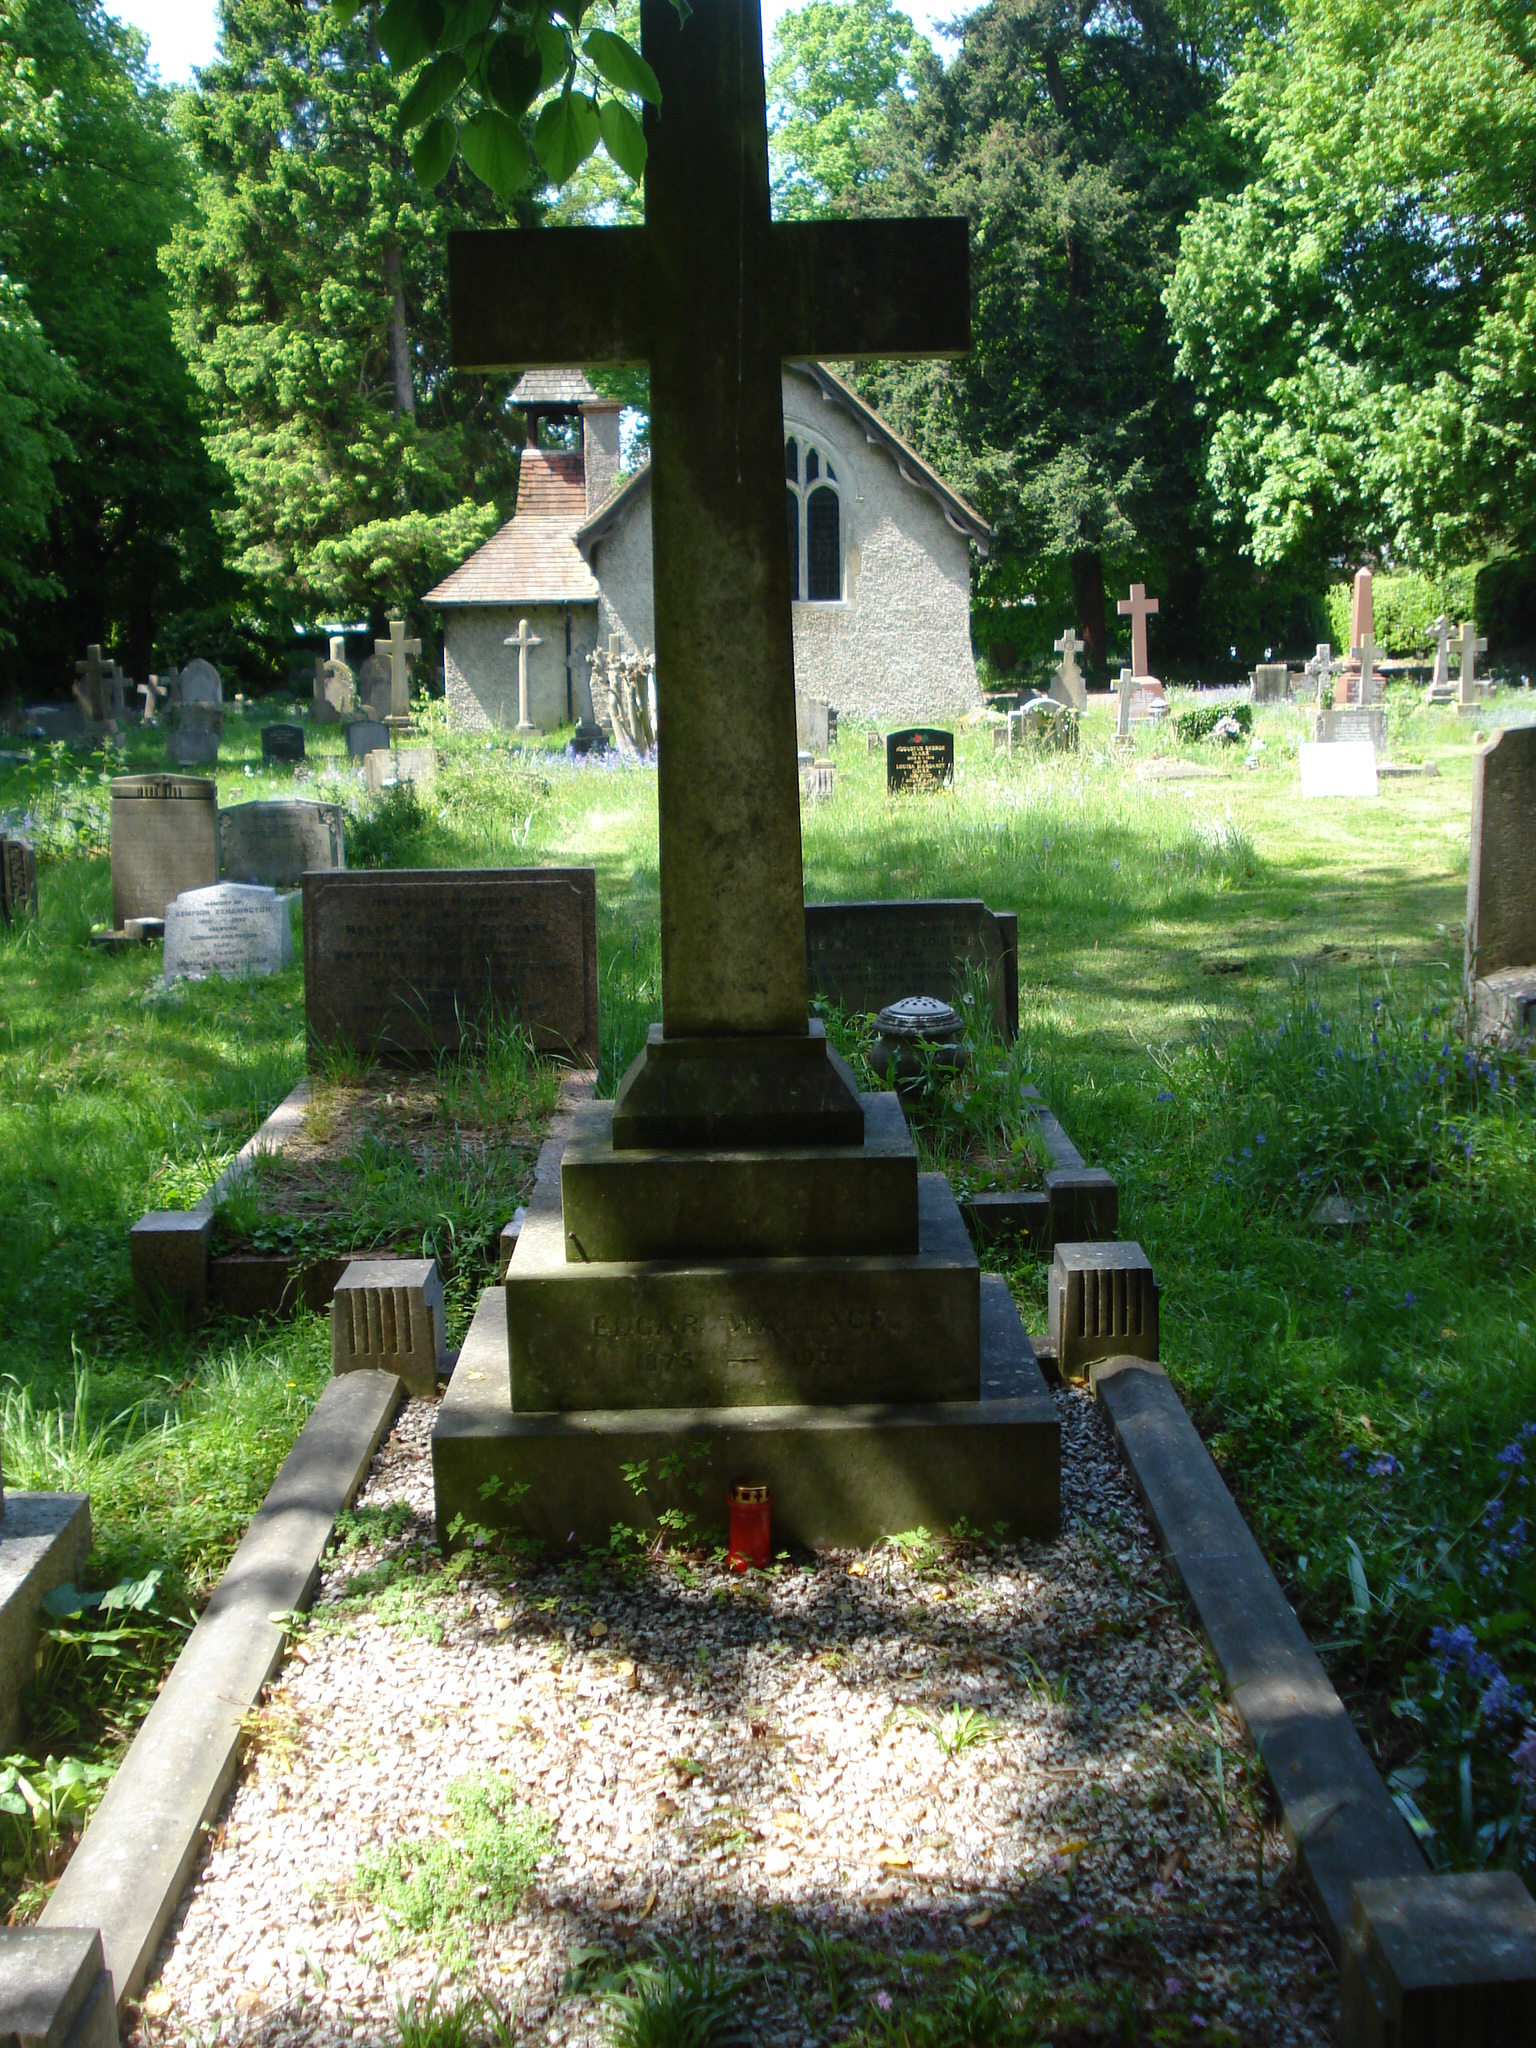 Fern Lane Cemetery in Little Marlow, letzte Ruhestätte von Edgar Wallace. Eigenes Foto.